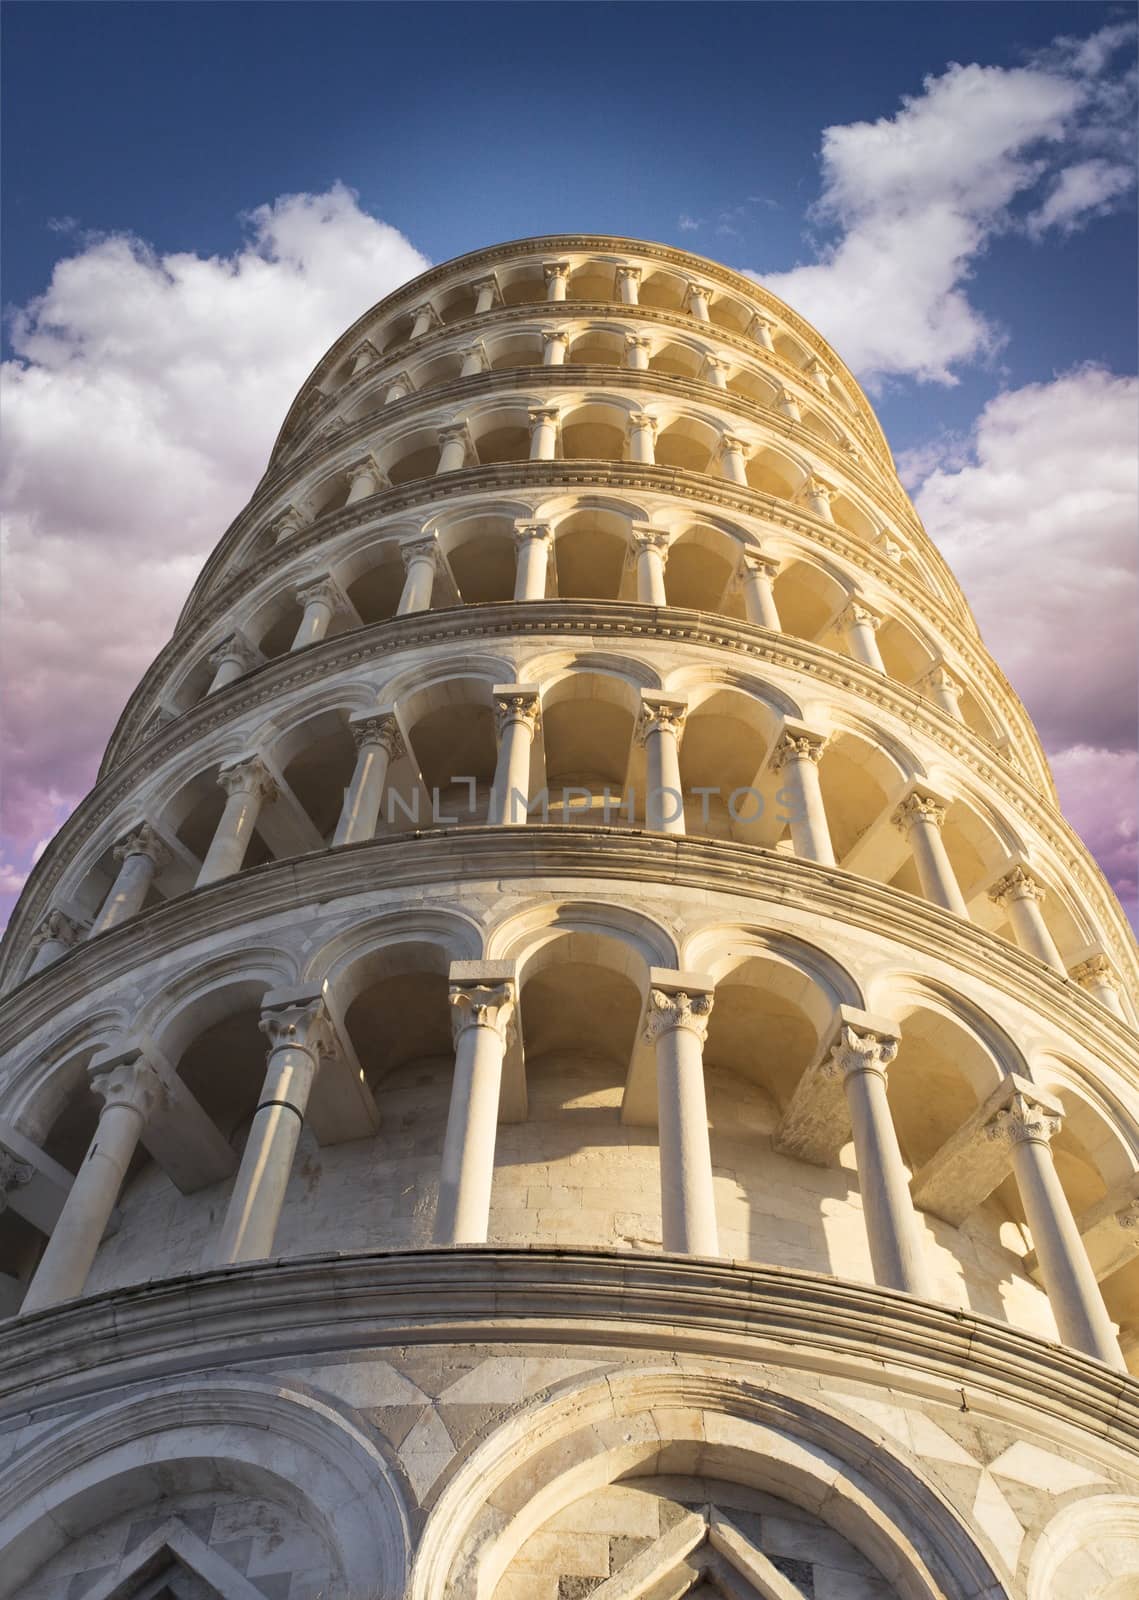 Leaning Tower of Pisa by Onigiristudio